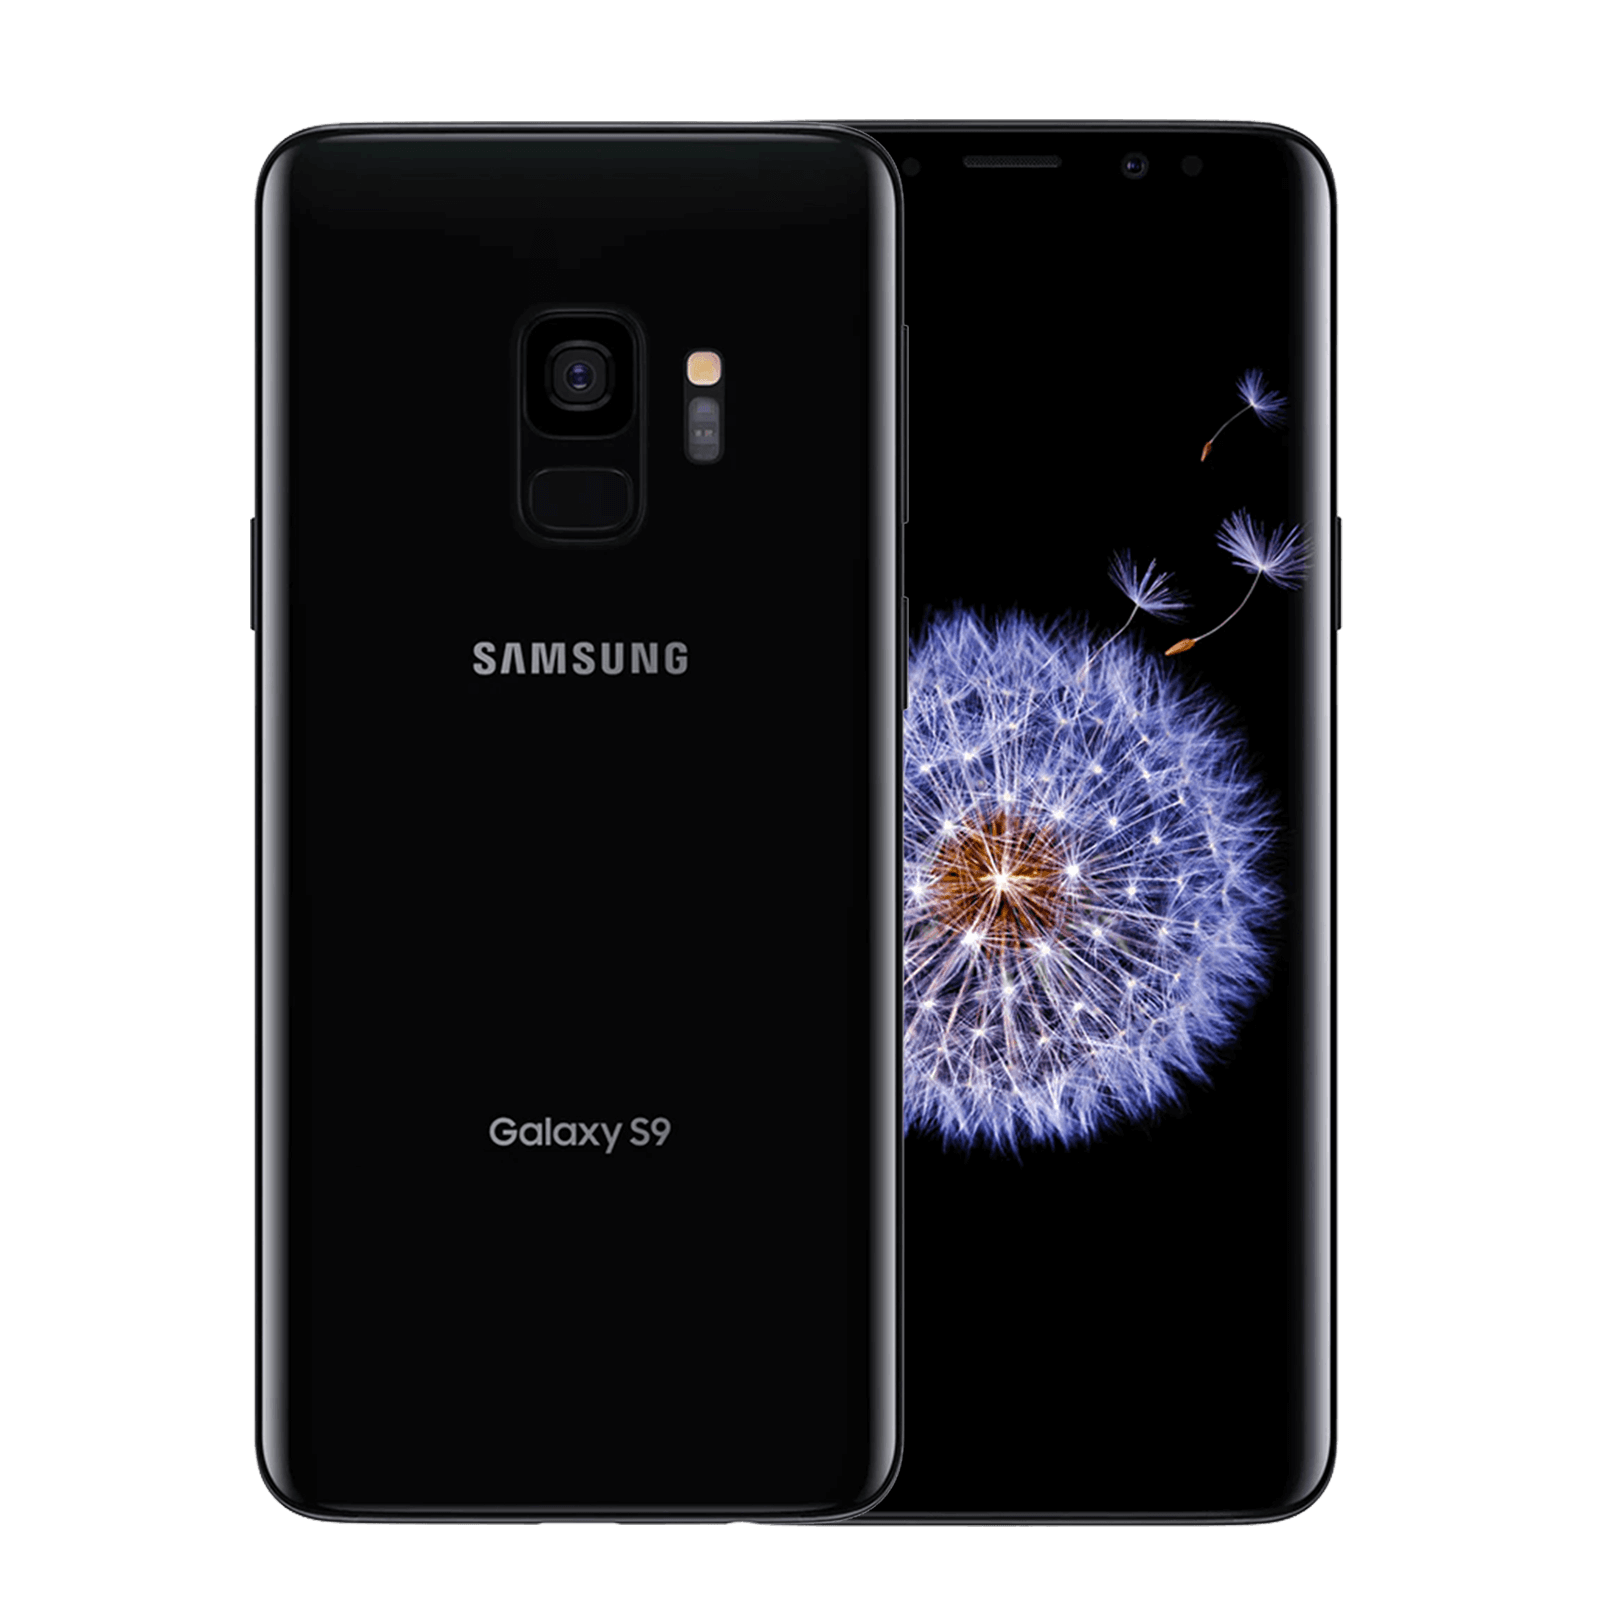 Samsung Galaxy S9 64GB Black Very good - Unlocked